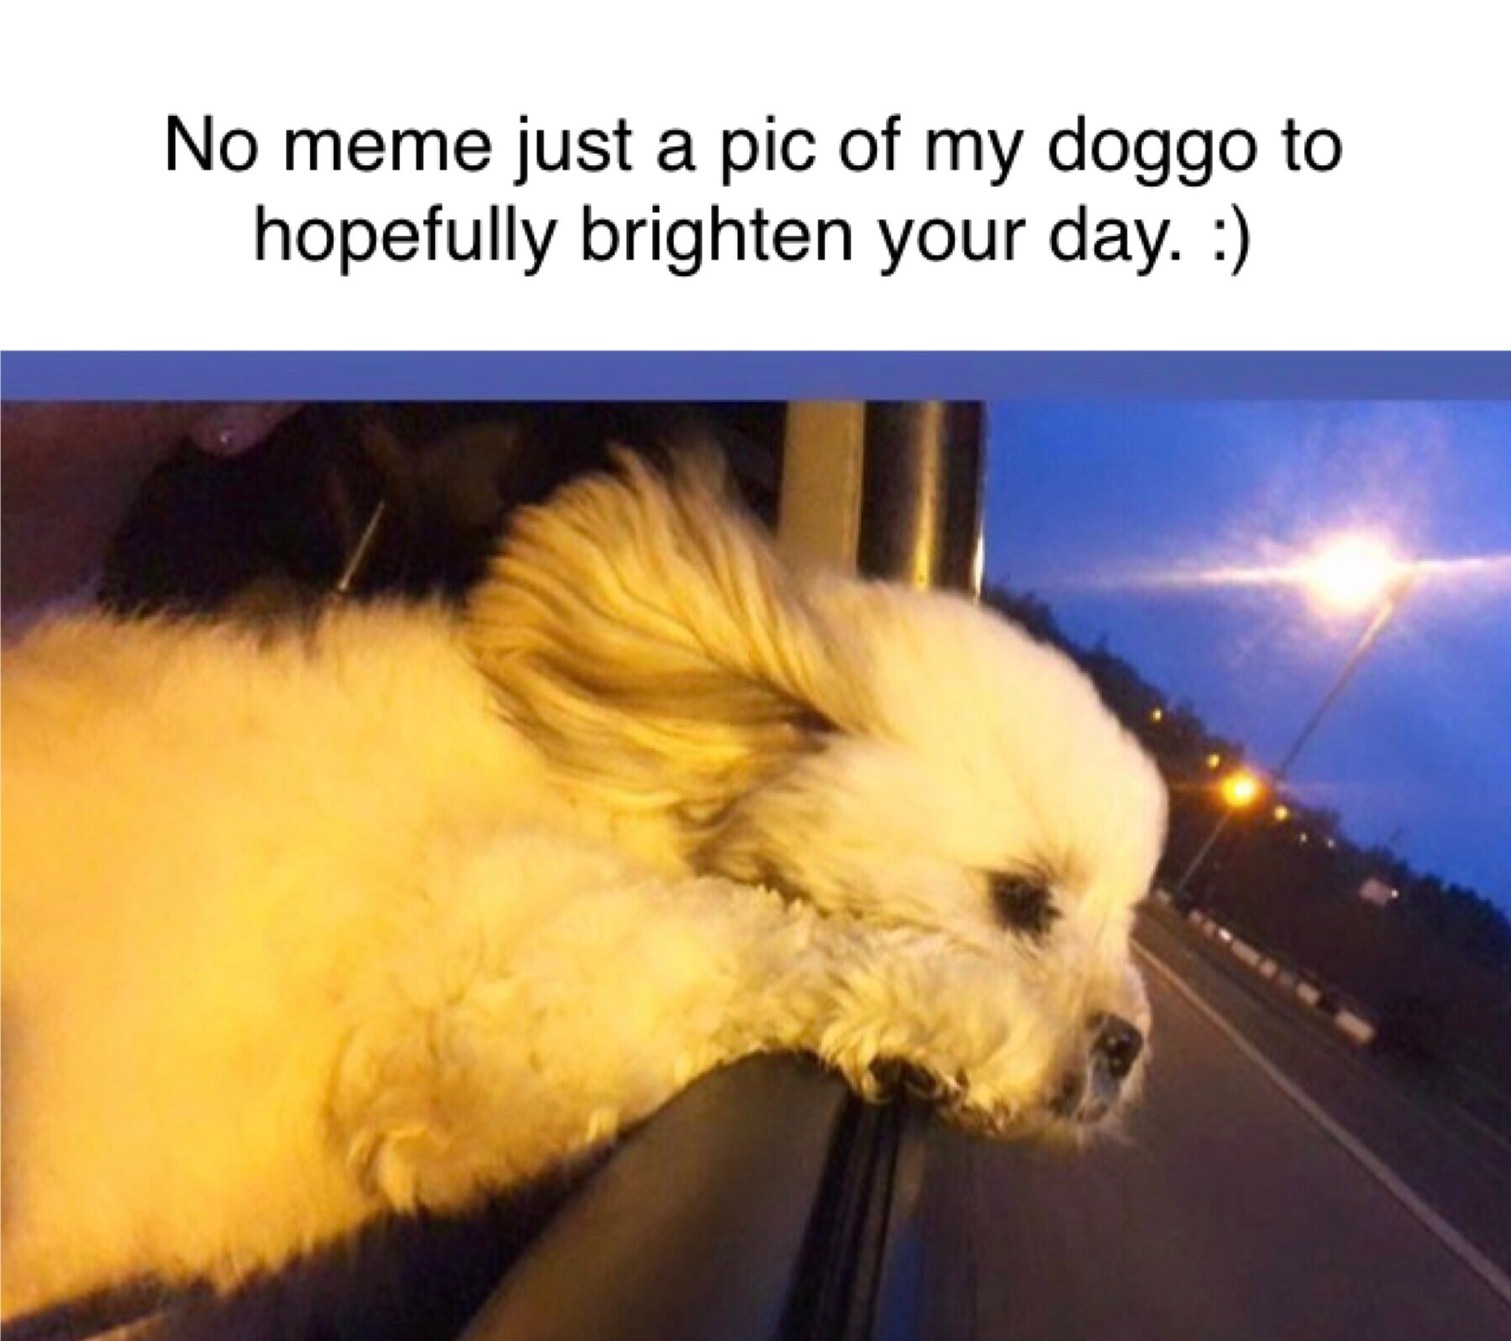 my doggo - meme